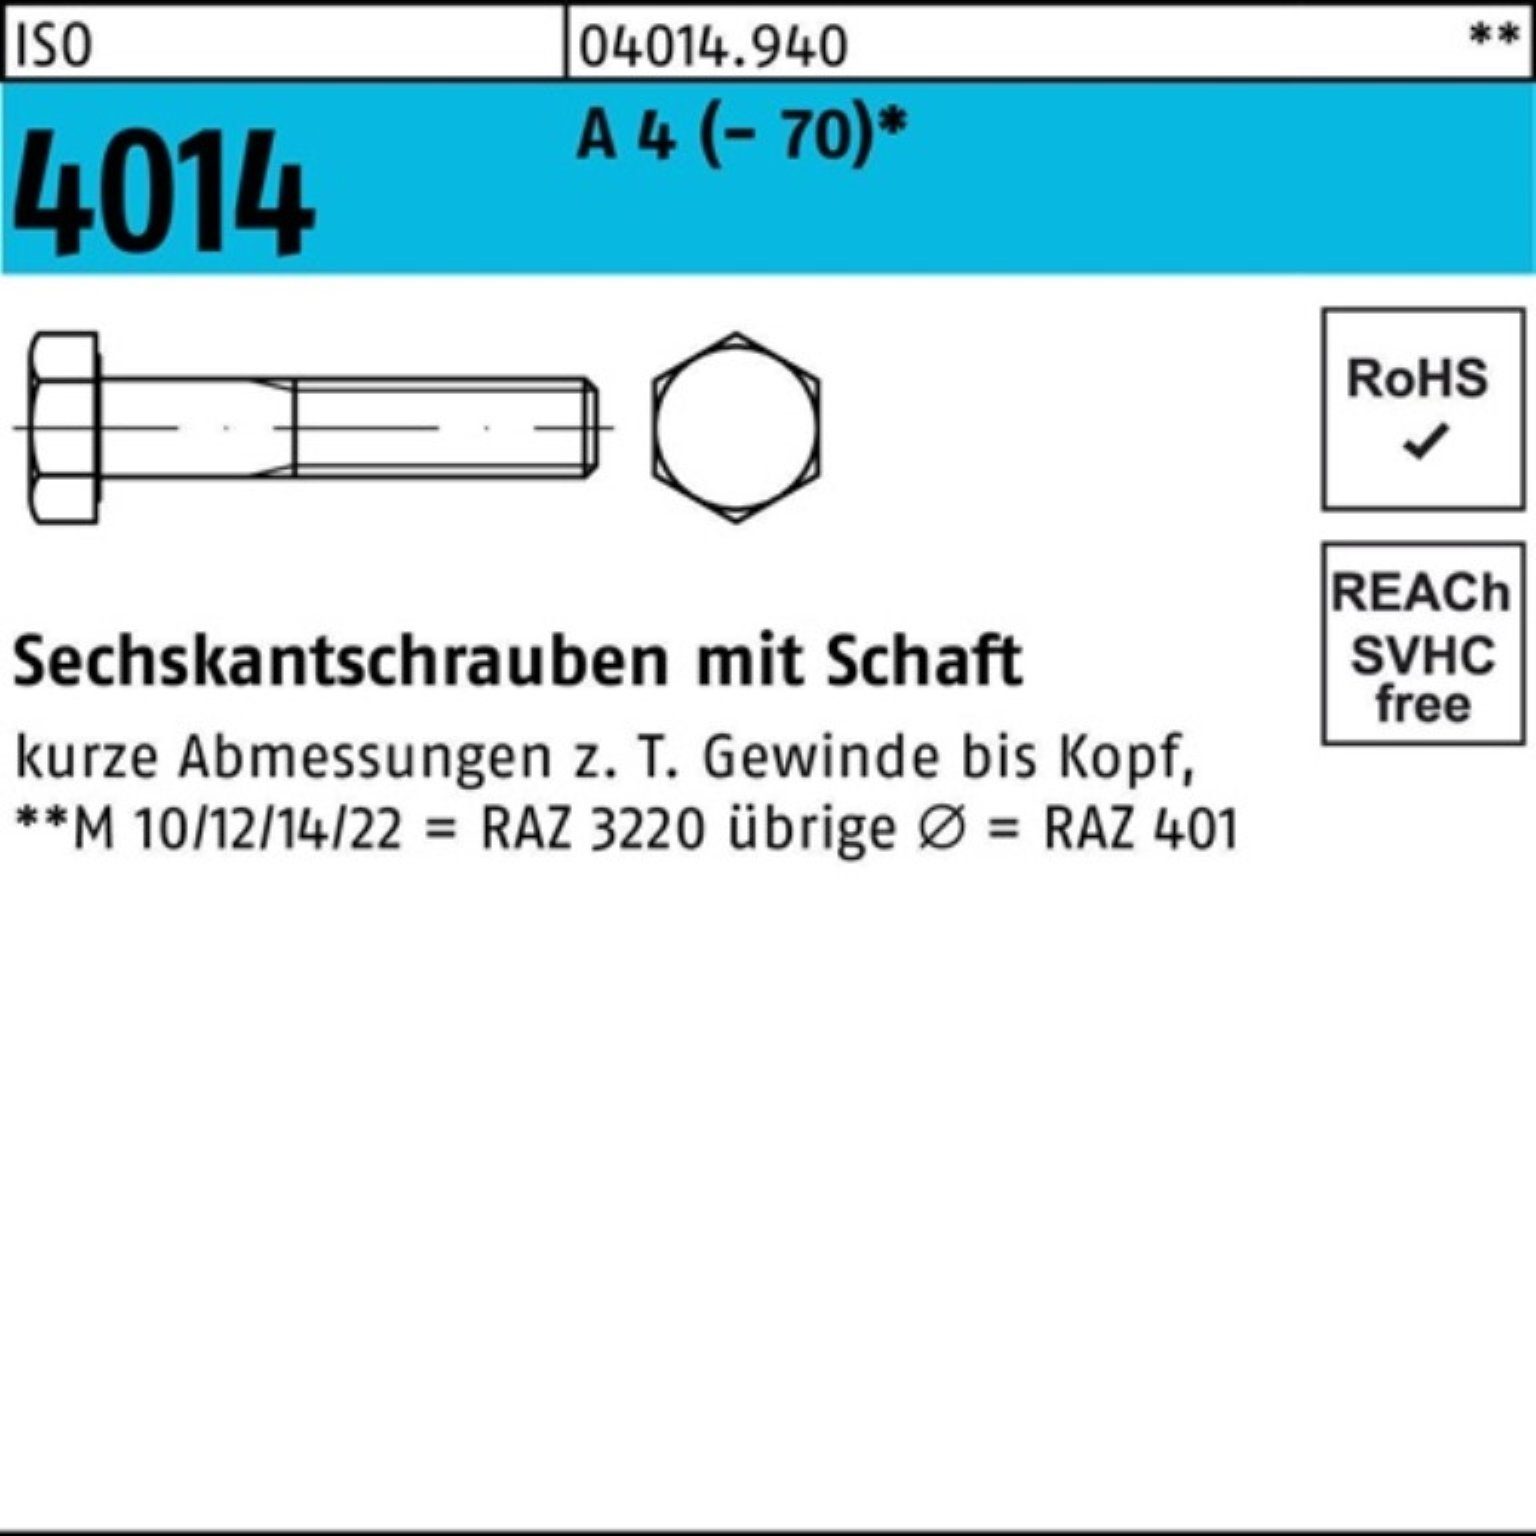 Bufab Sechskantschraube 100er Pack Sechskantschraube ISO 4014 Schaft M5x 100 A 4 (70) 100 St